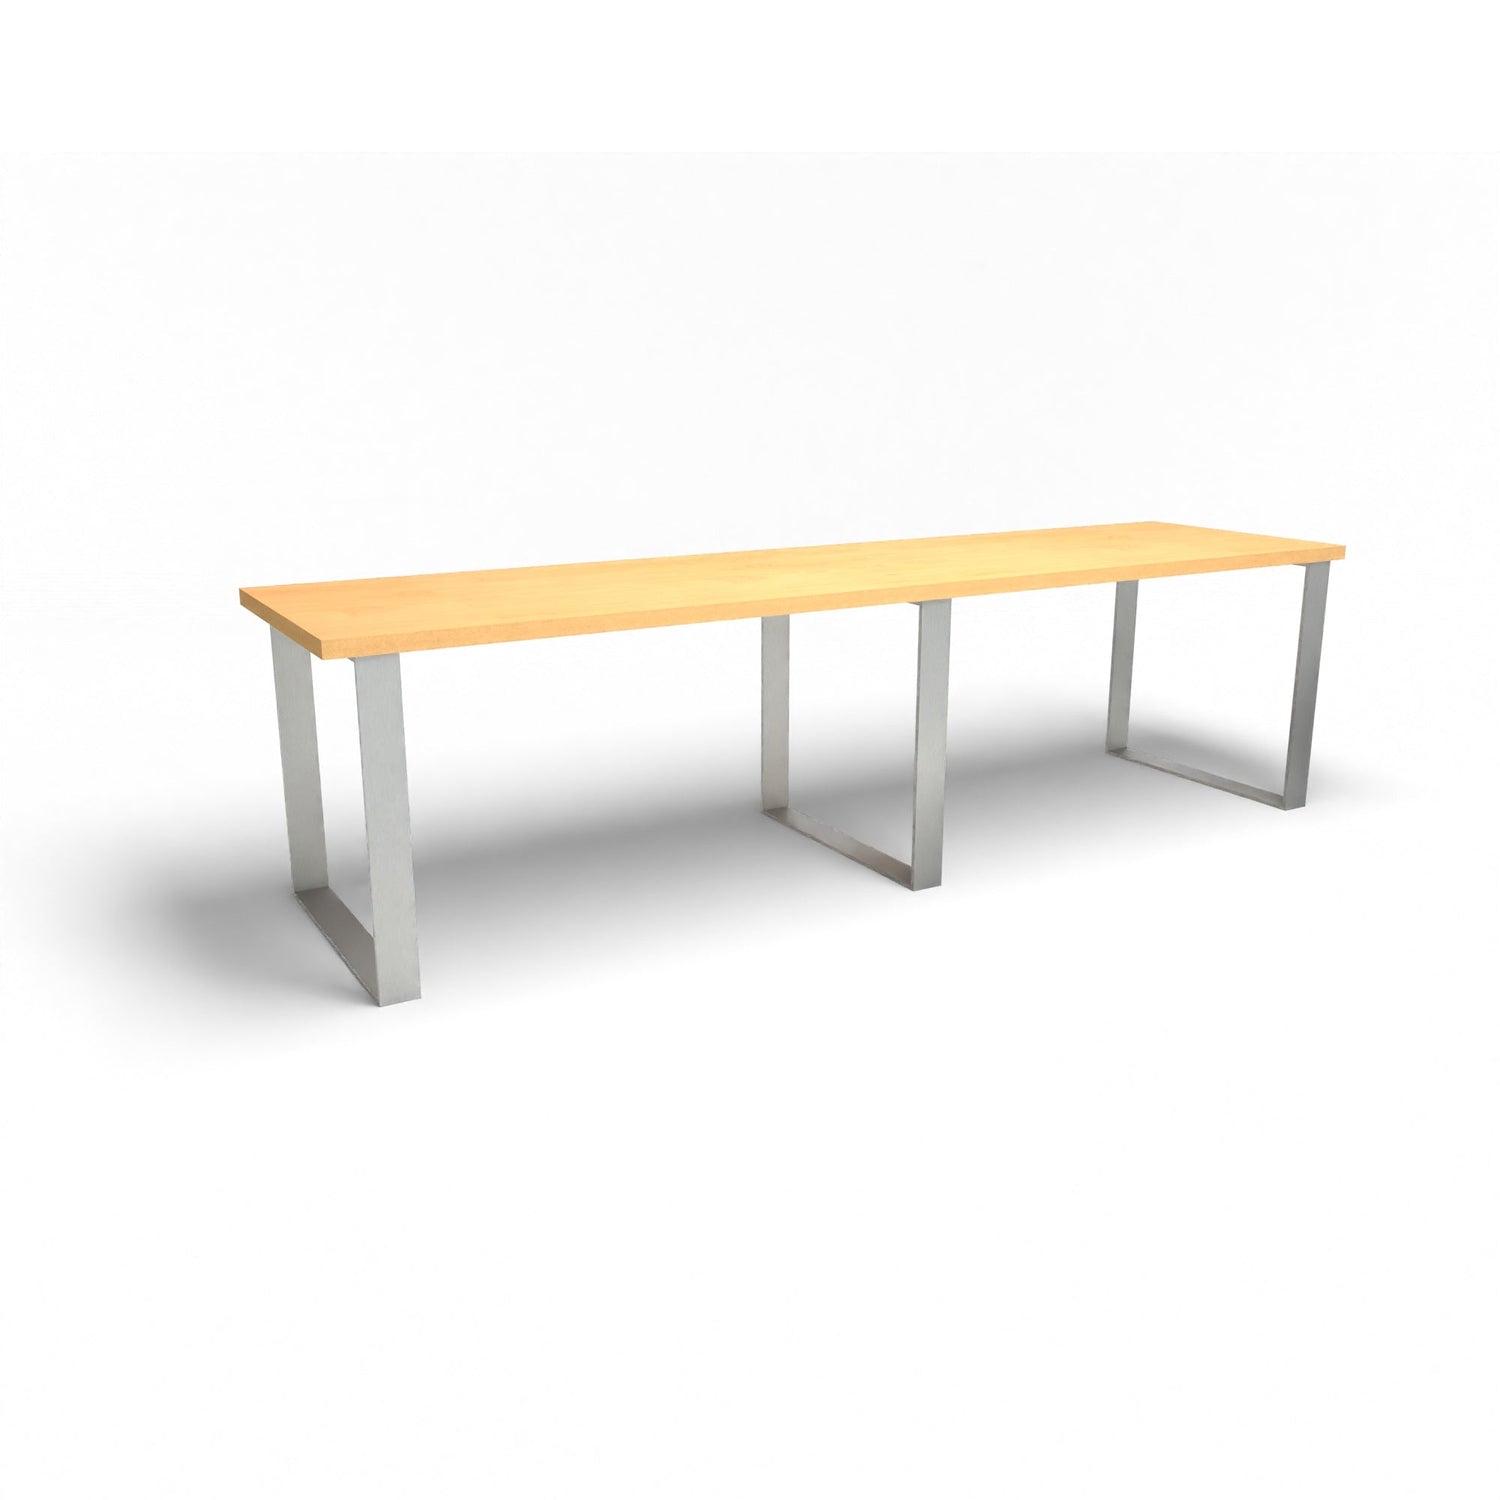 Holztisch - Buche - 3 Meter